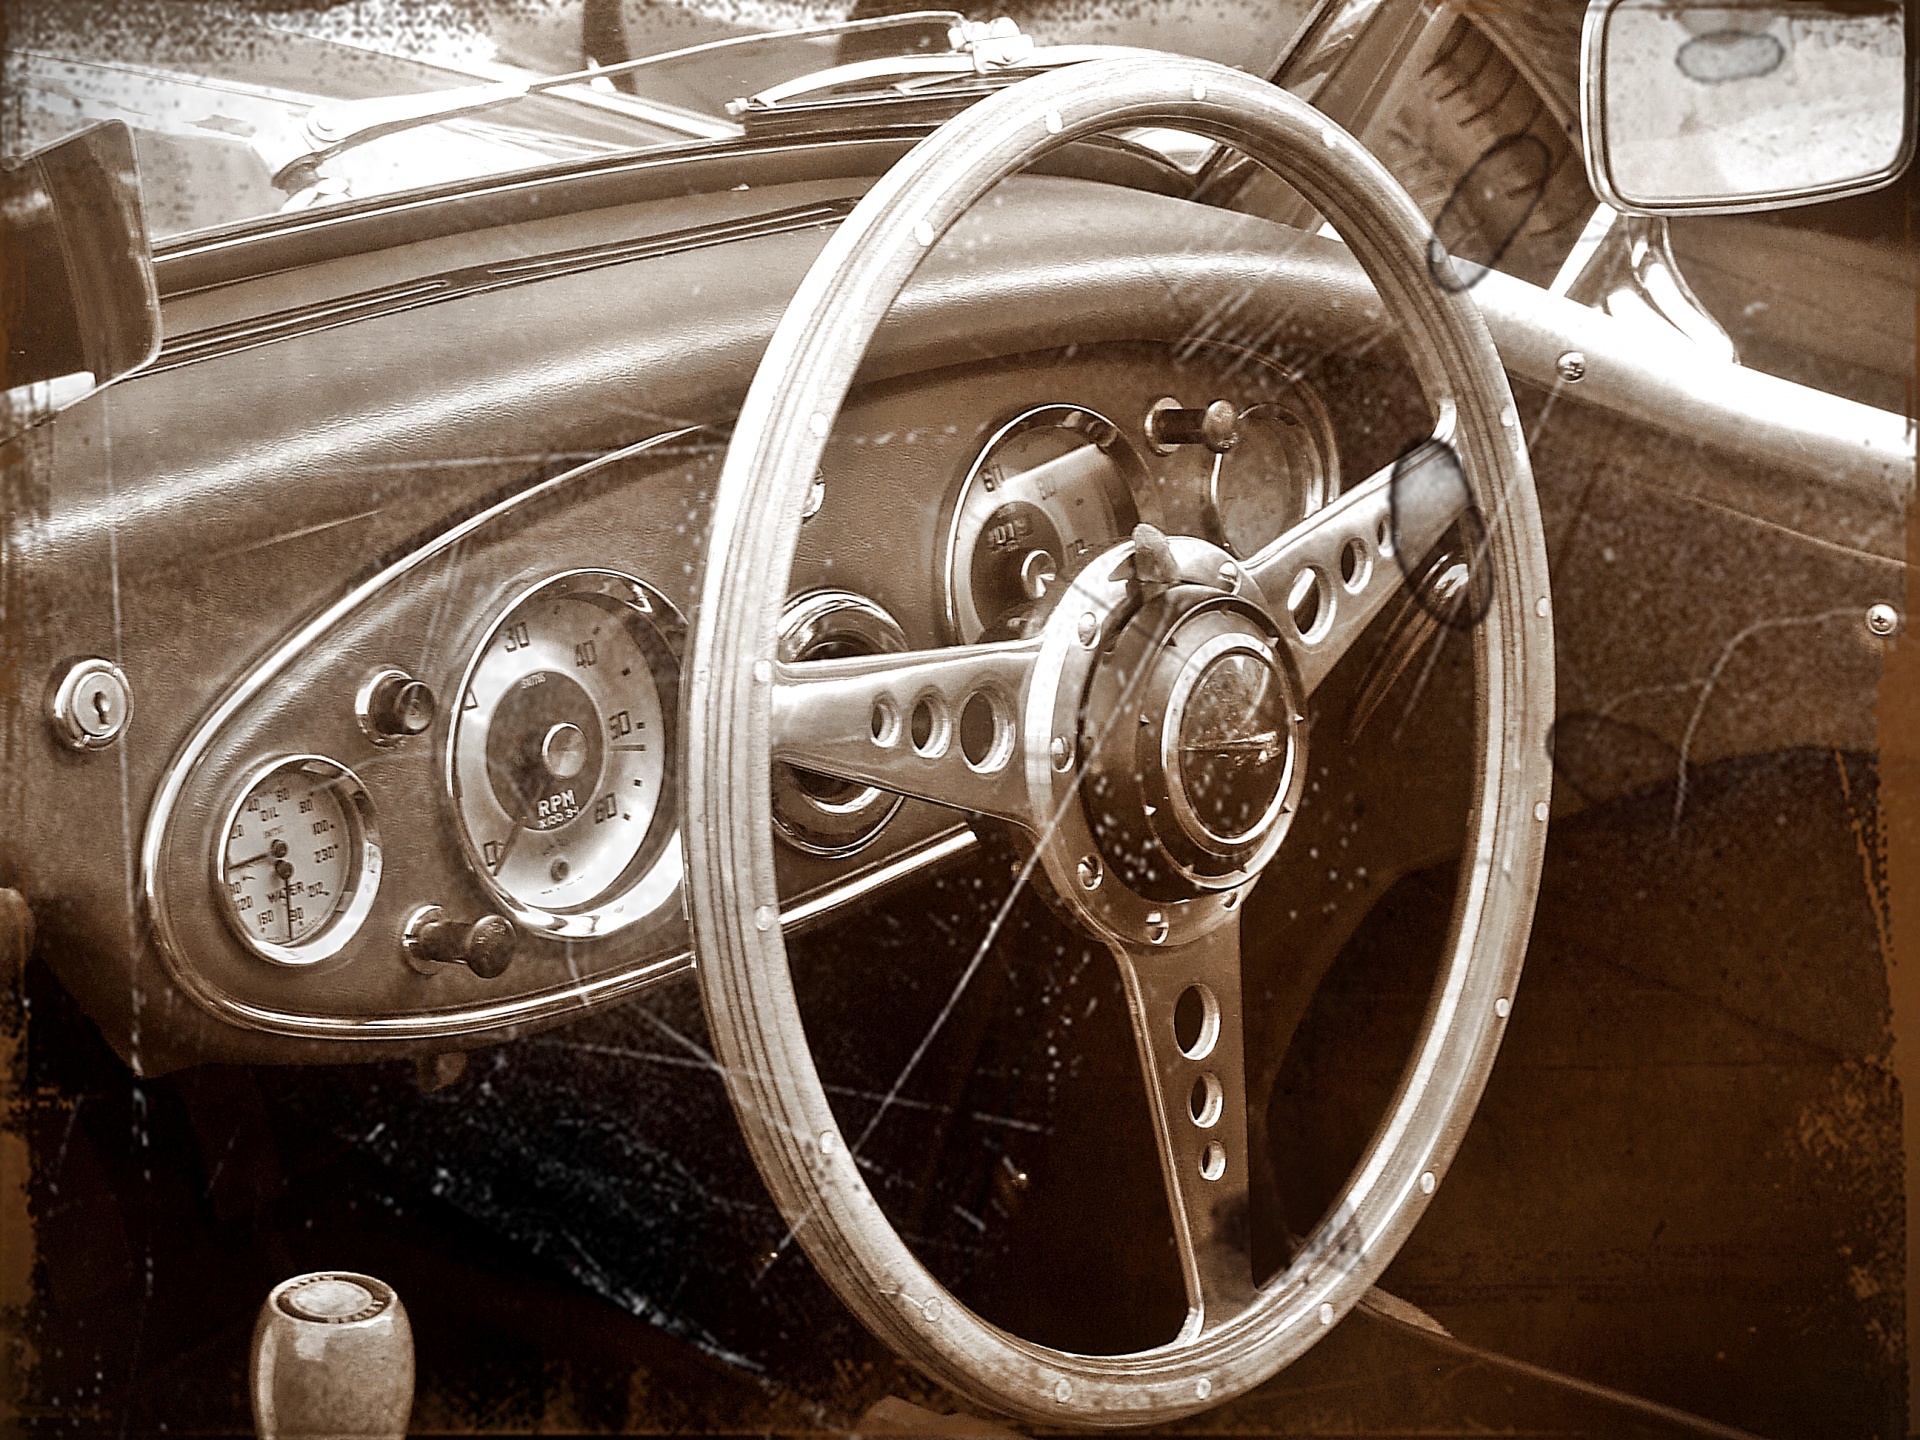 Antiqued Image Vintage Car Interior Dashboard Instruments